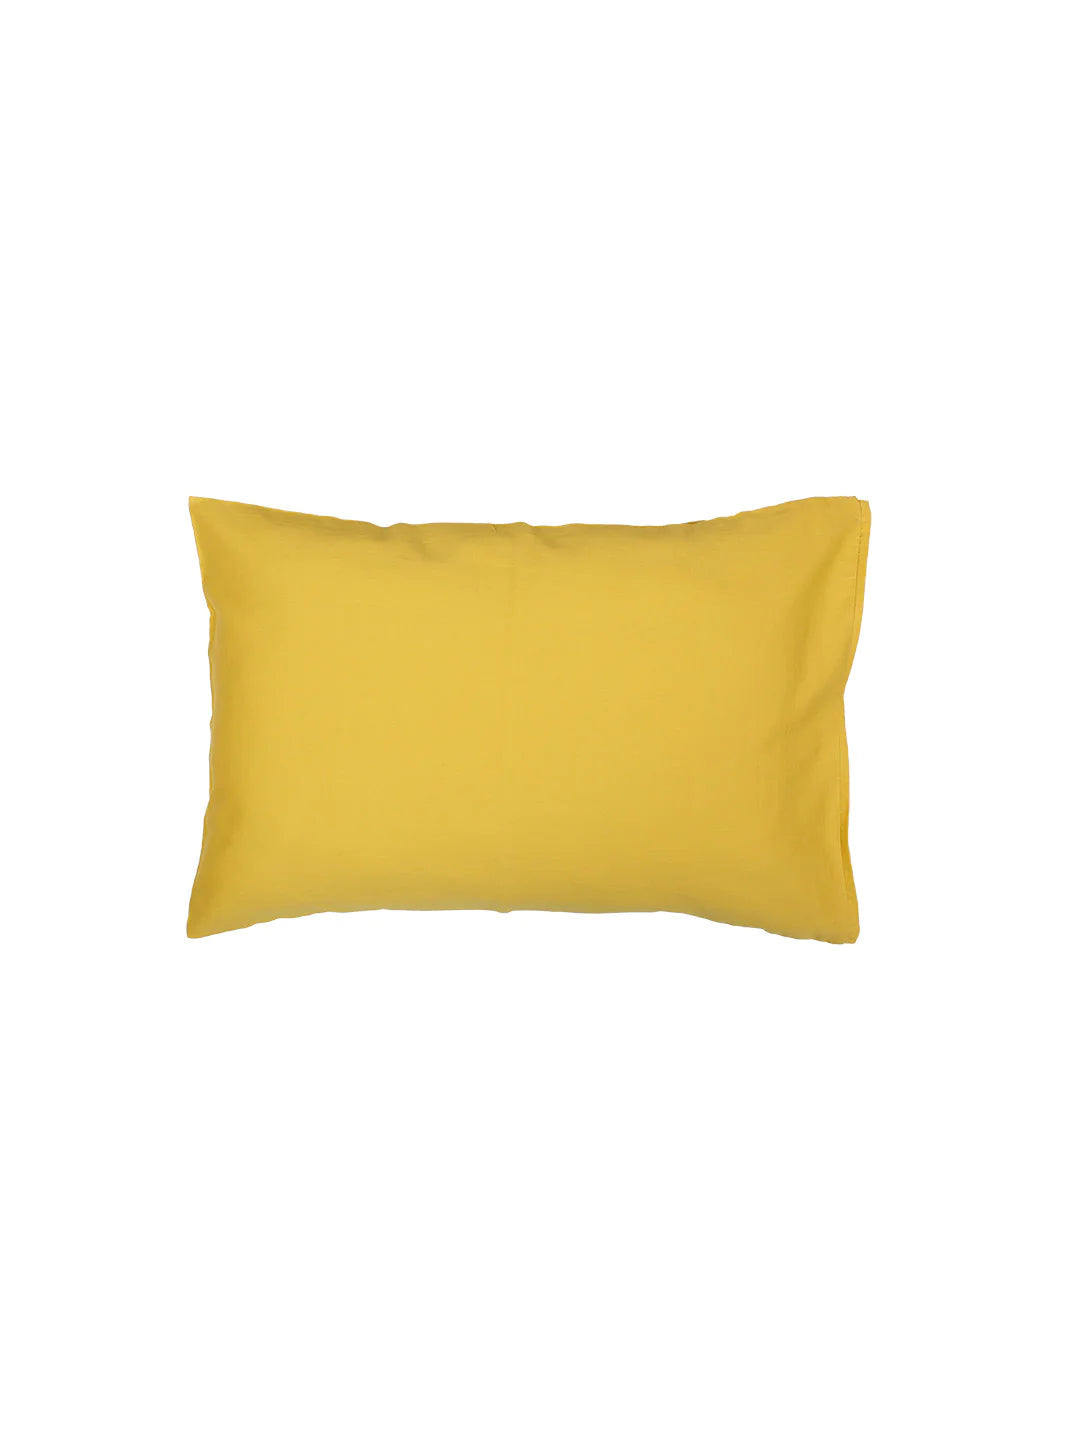 Piyambu Yellow Pillow Cover